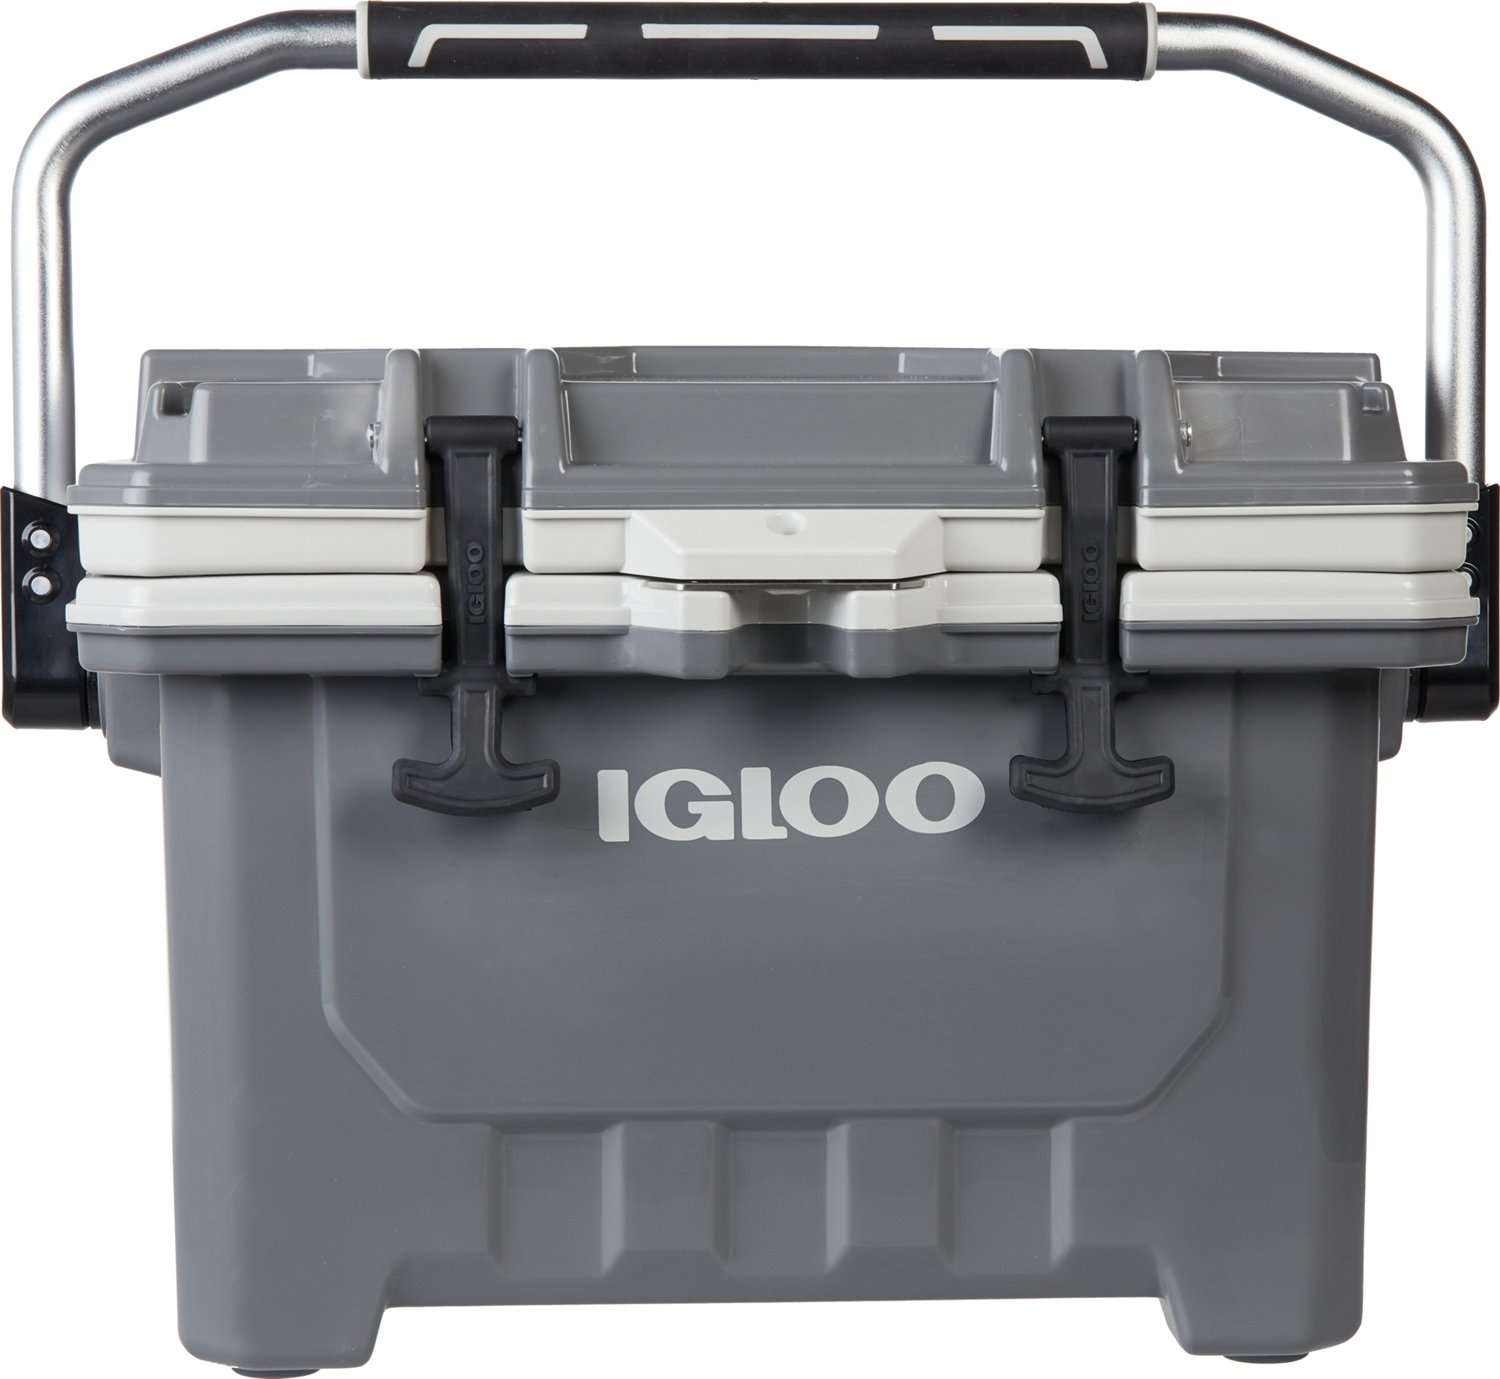 Igloo Imx 24 Qt Cooler Academy